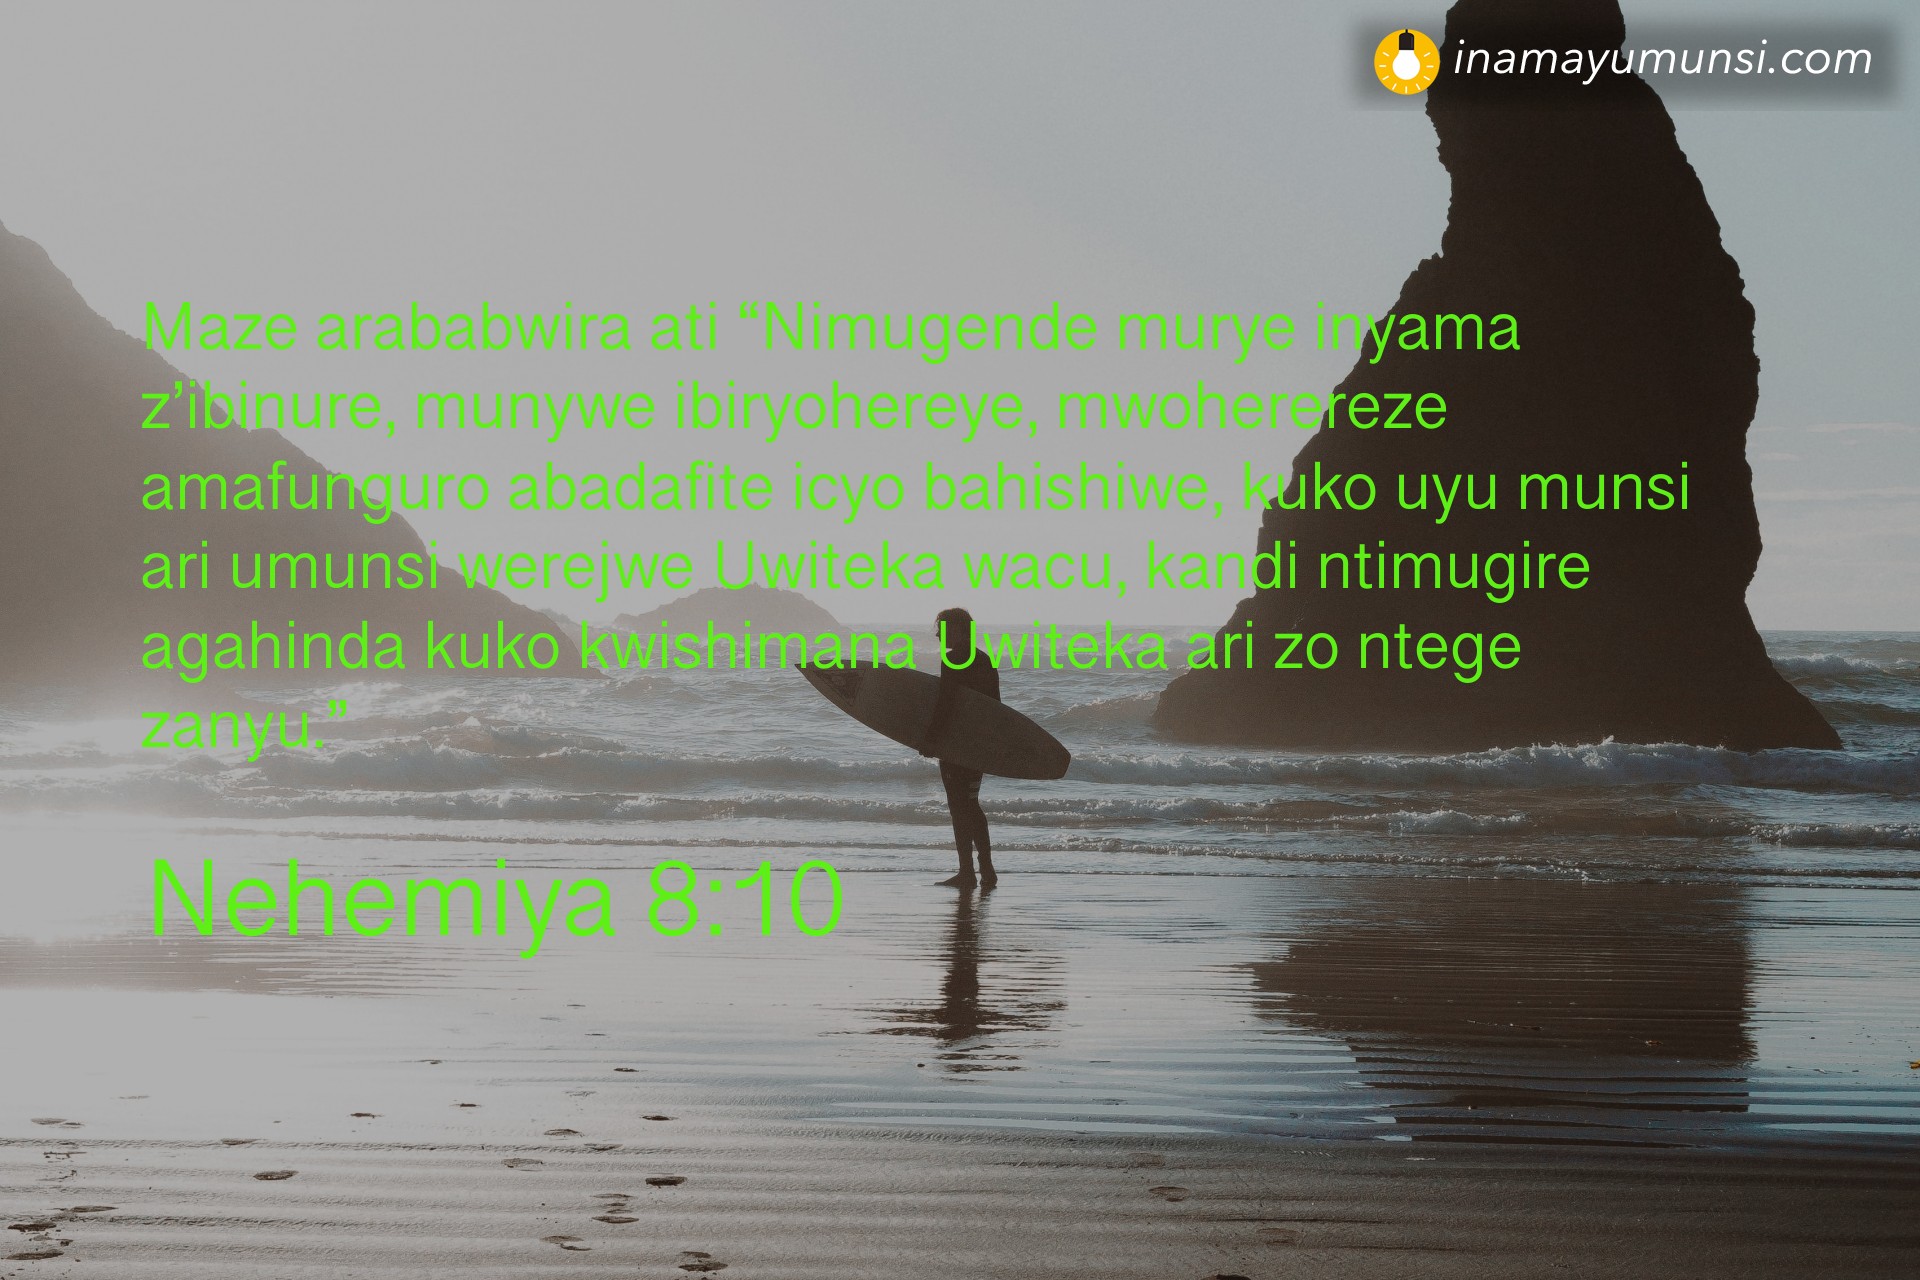 Nehemiya 8:10 ⇒ Maze arababwira ati “Nimugende murye inyama z’ibinure, munywe ibiryohereye, ..